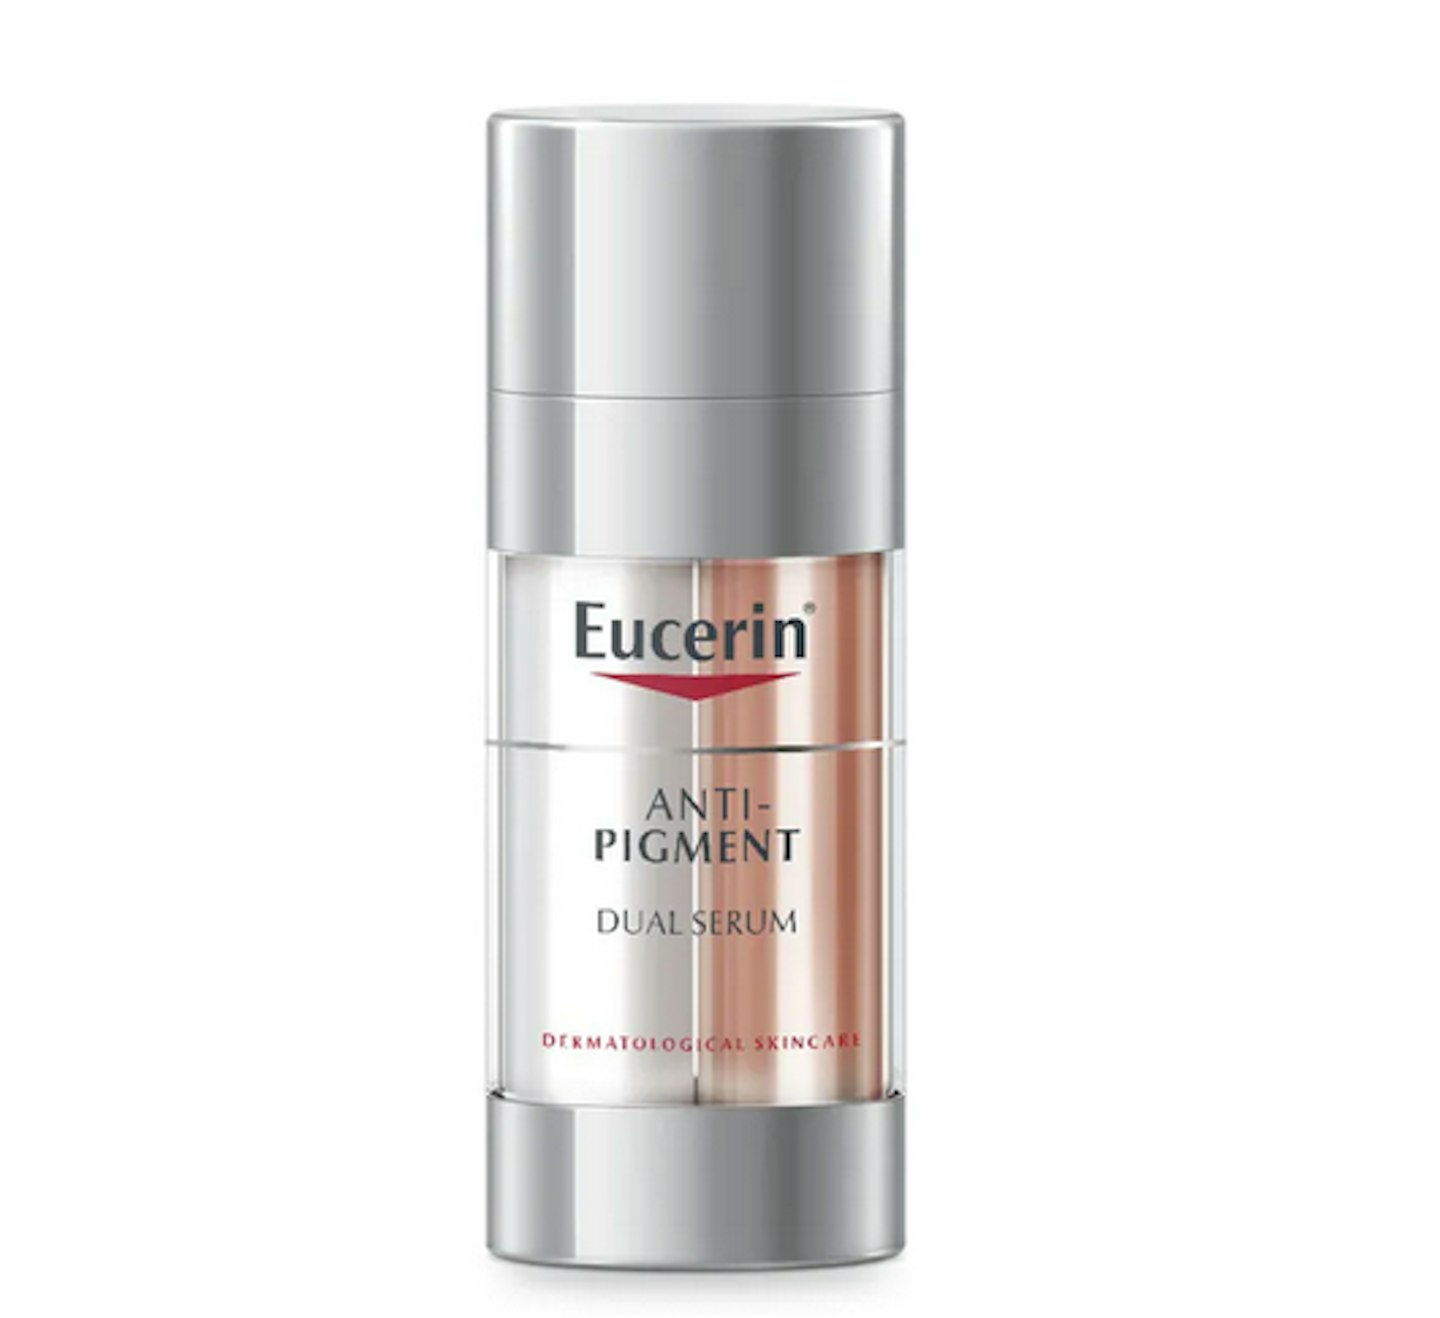 Eucerin Anti-Pigment Dual Serum, £38